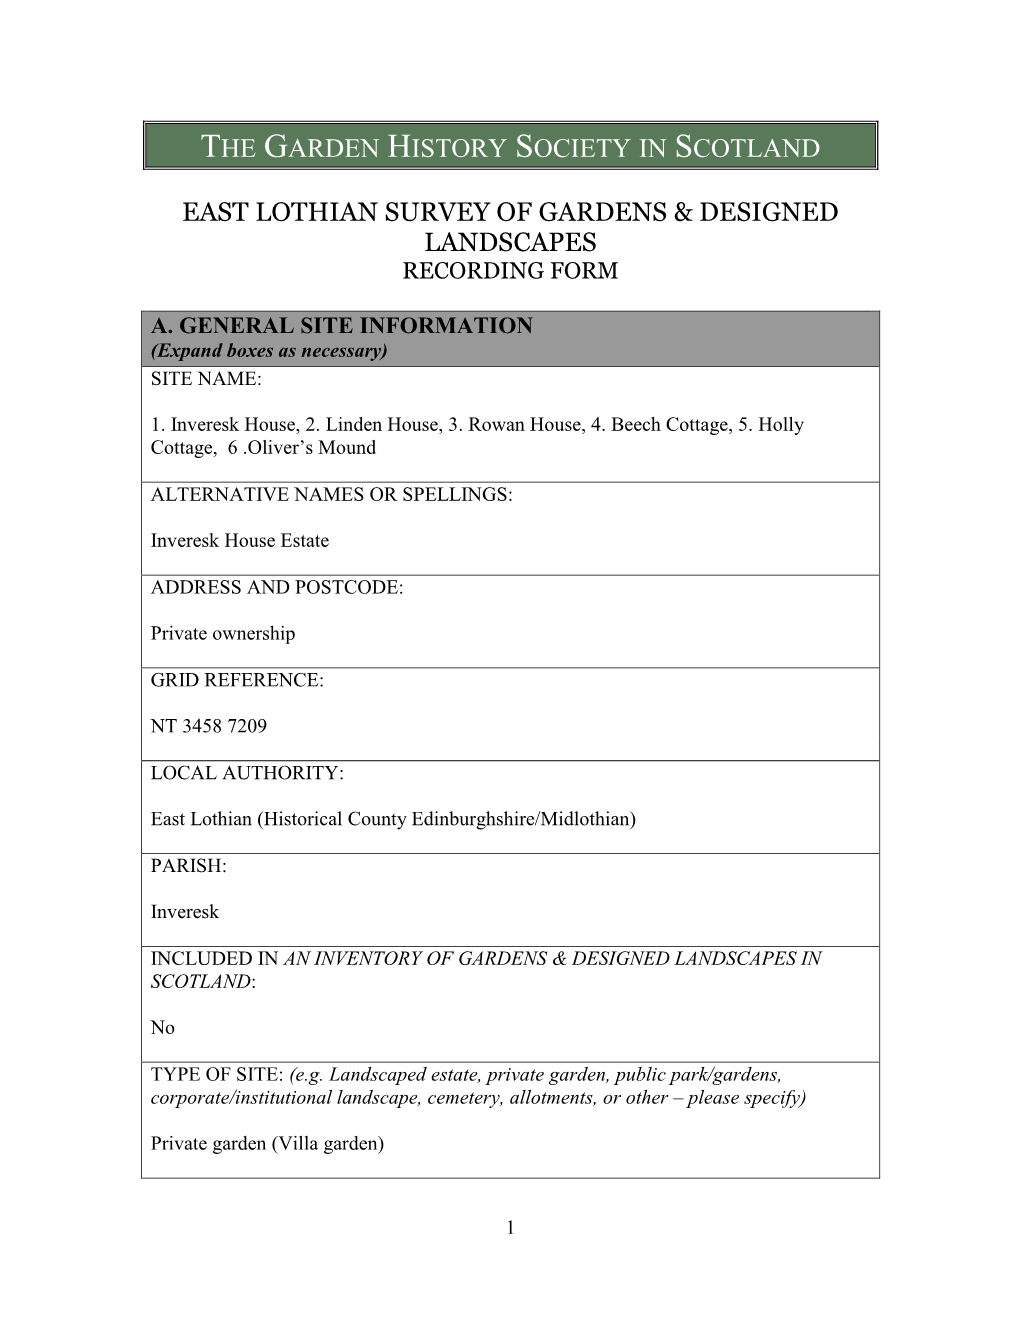 East Lothian Survey of Gardens & Designed Landscapes